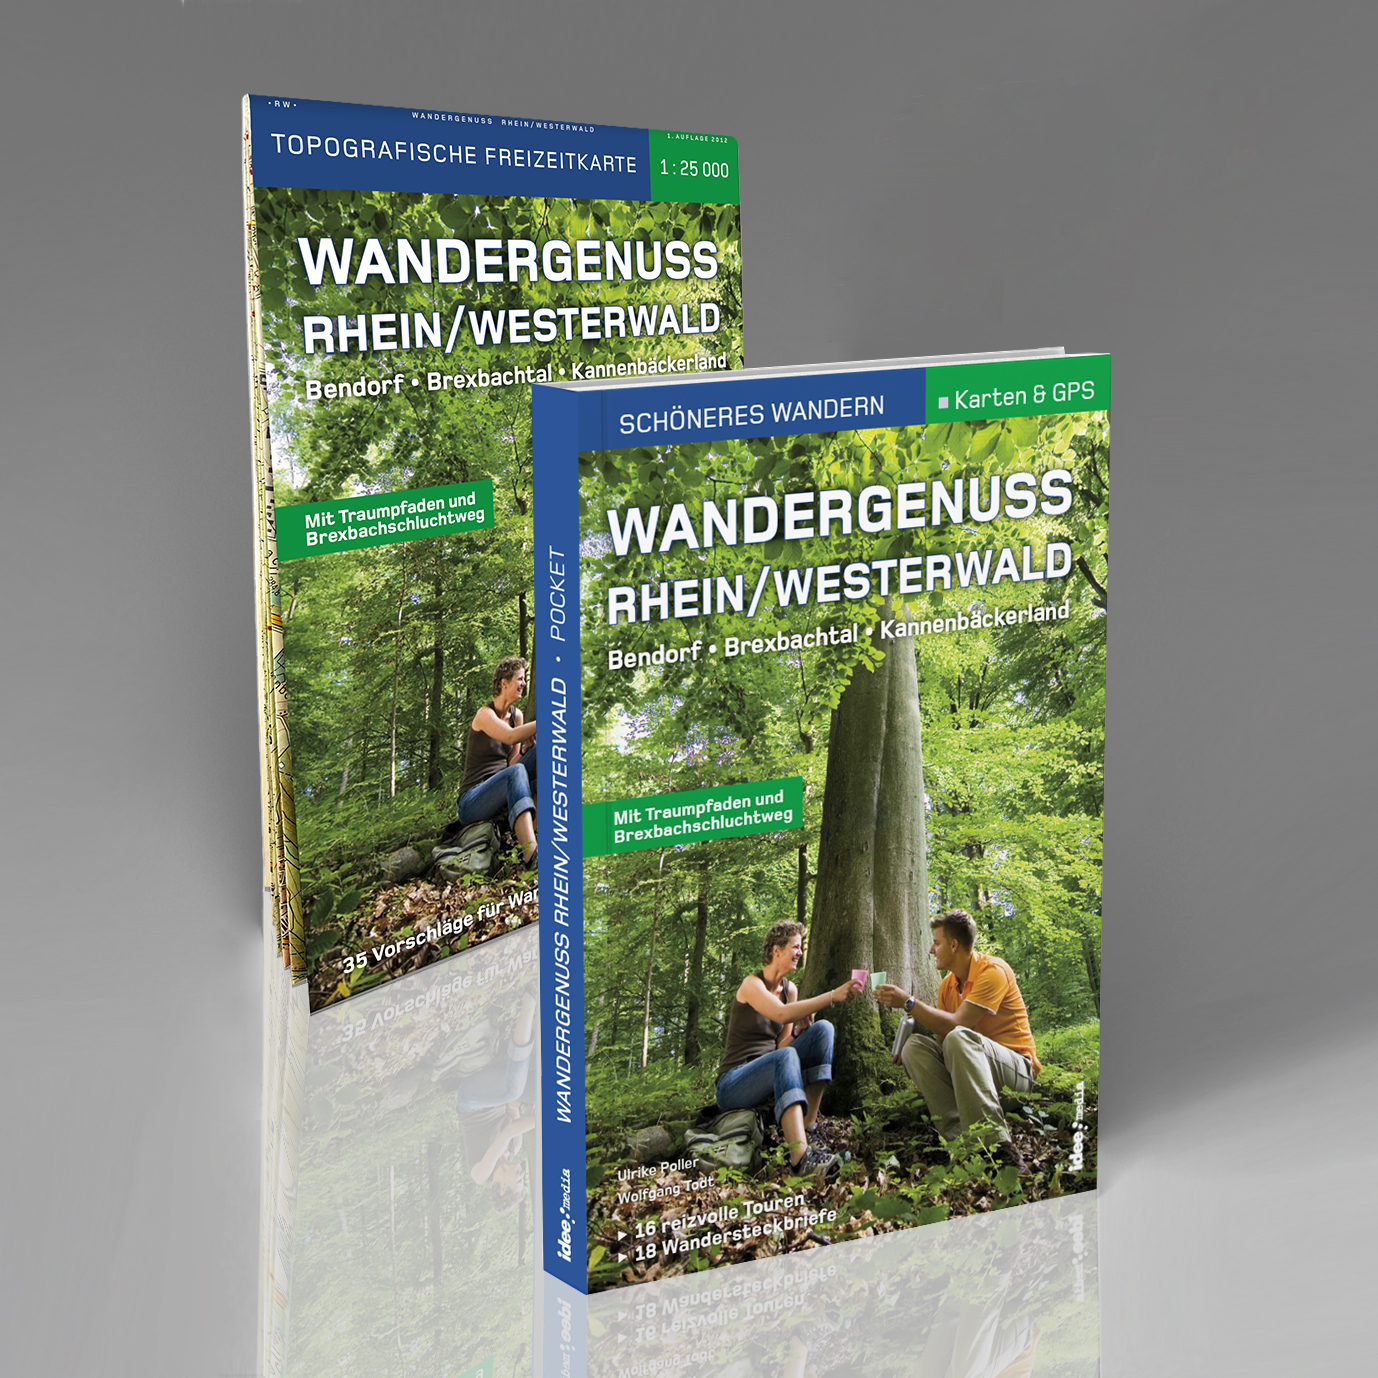 Online bestellen: Wandelkaart - Wandelgids Wandergenuss Rhein/Westerwald | IdeeMedia